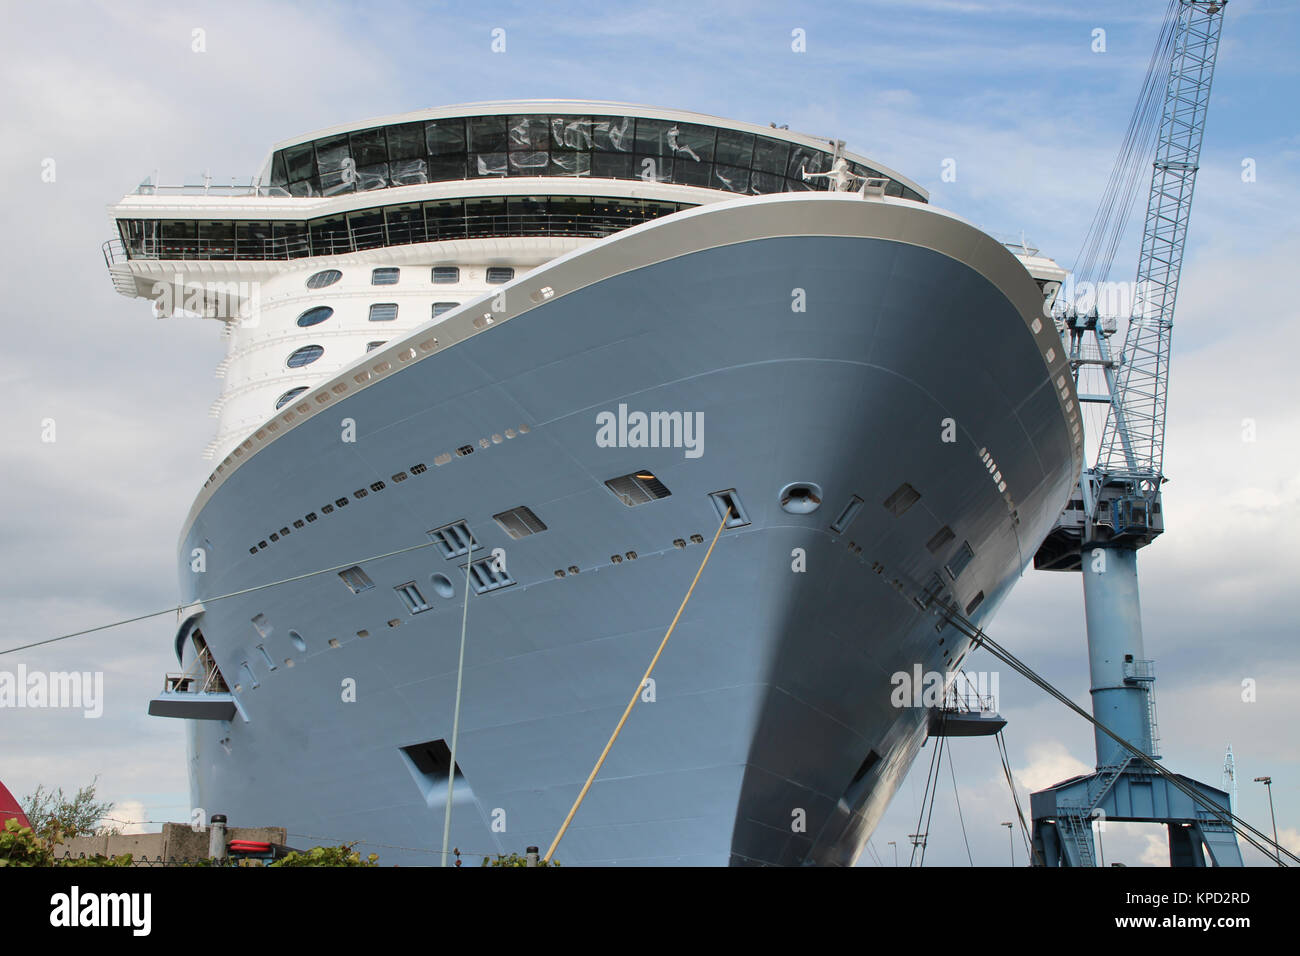 a cruise ship Stock Photo